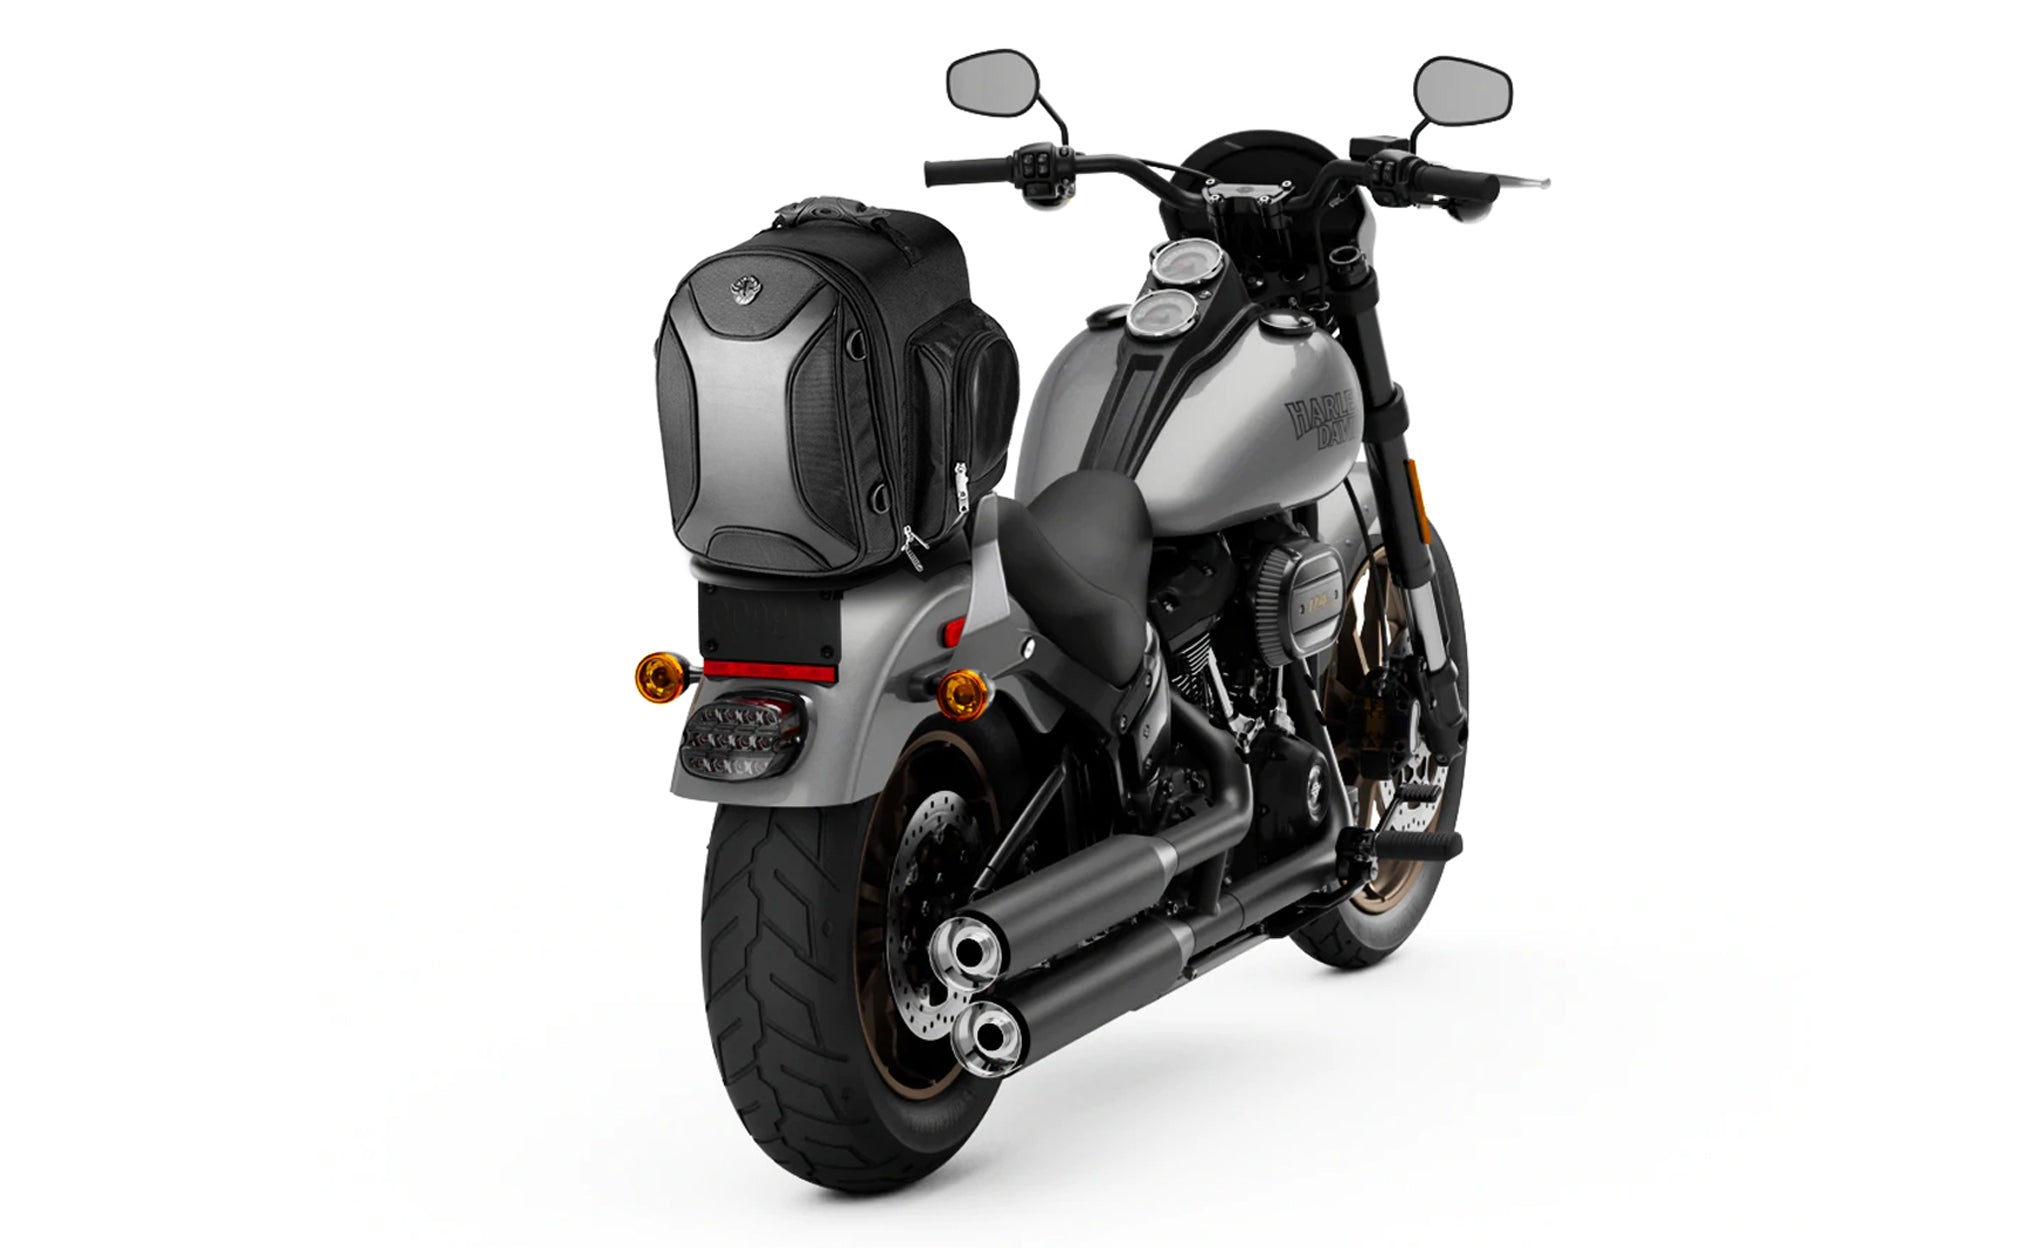 Viking Dagr Small Suzuki Motorcycle Sissy Bar Bag Bag on Bike View @expand